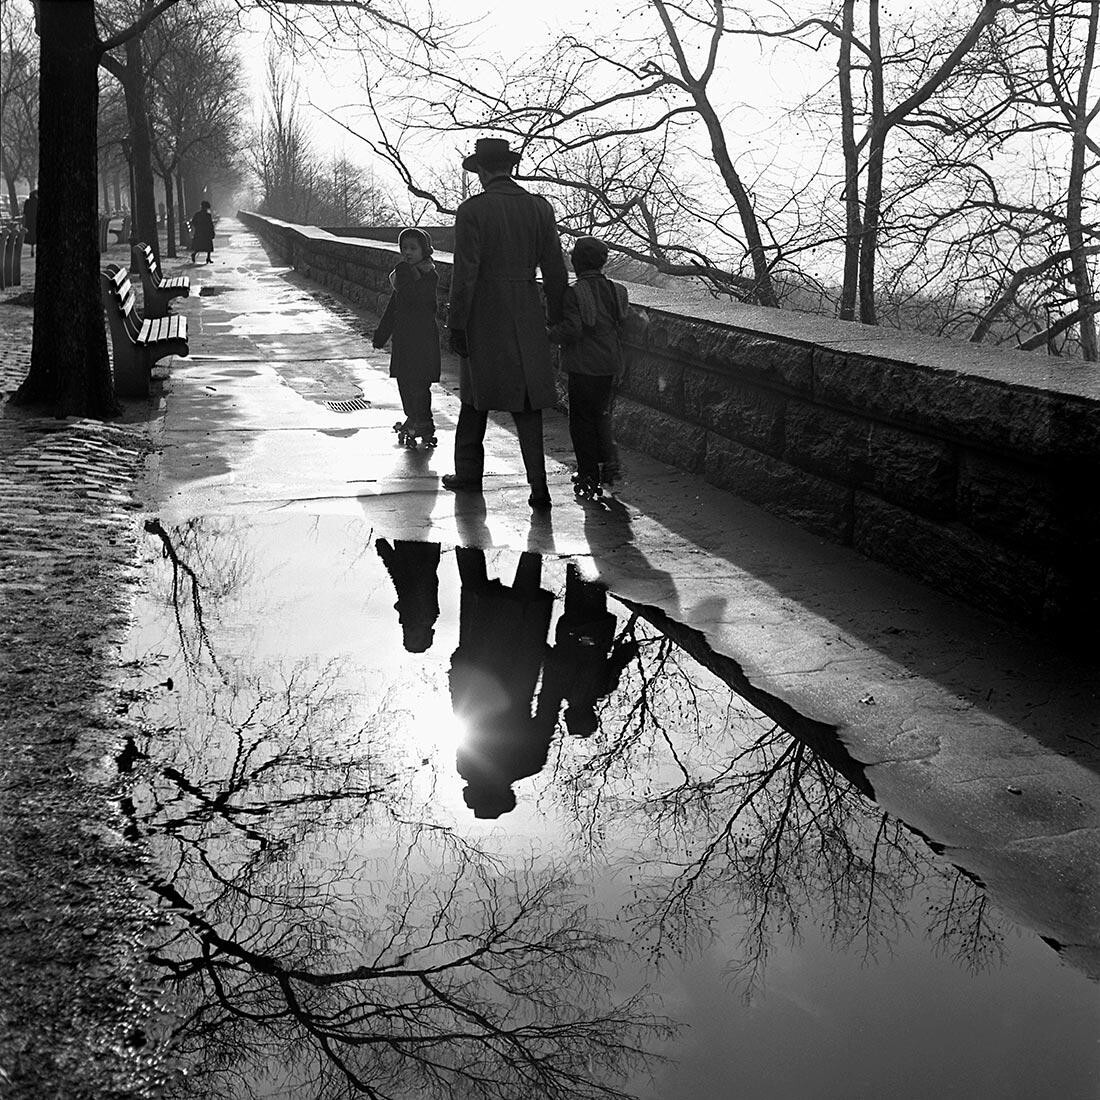 Январь 1953 года, Нью-Йорк, штат Нью-Йорк. Фотограф Вивиан Майер